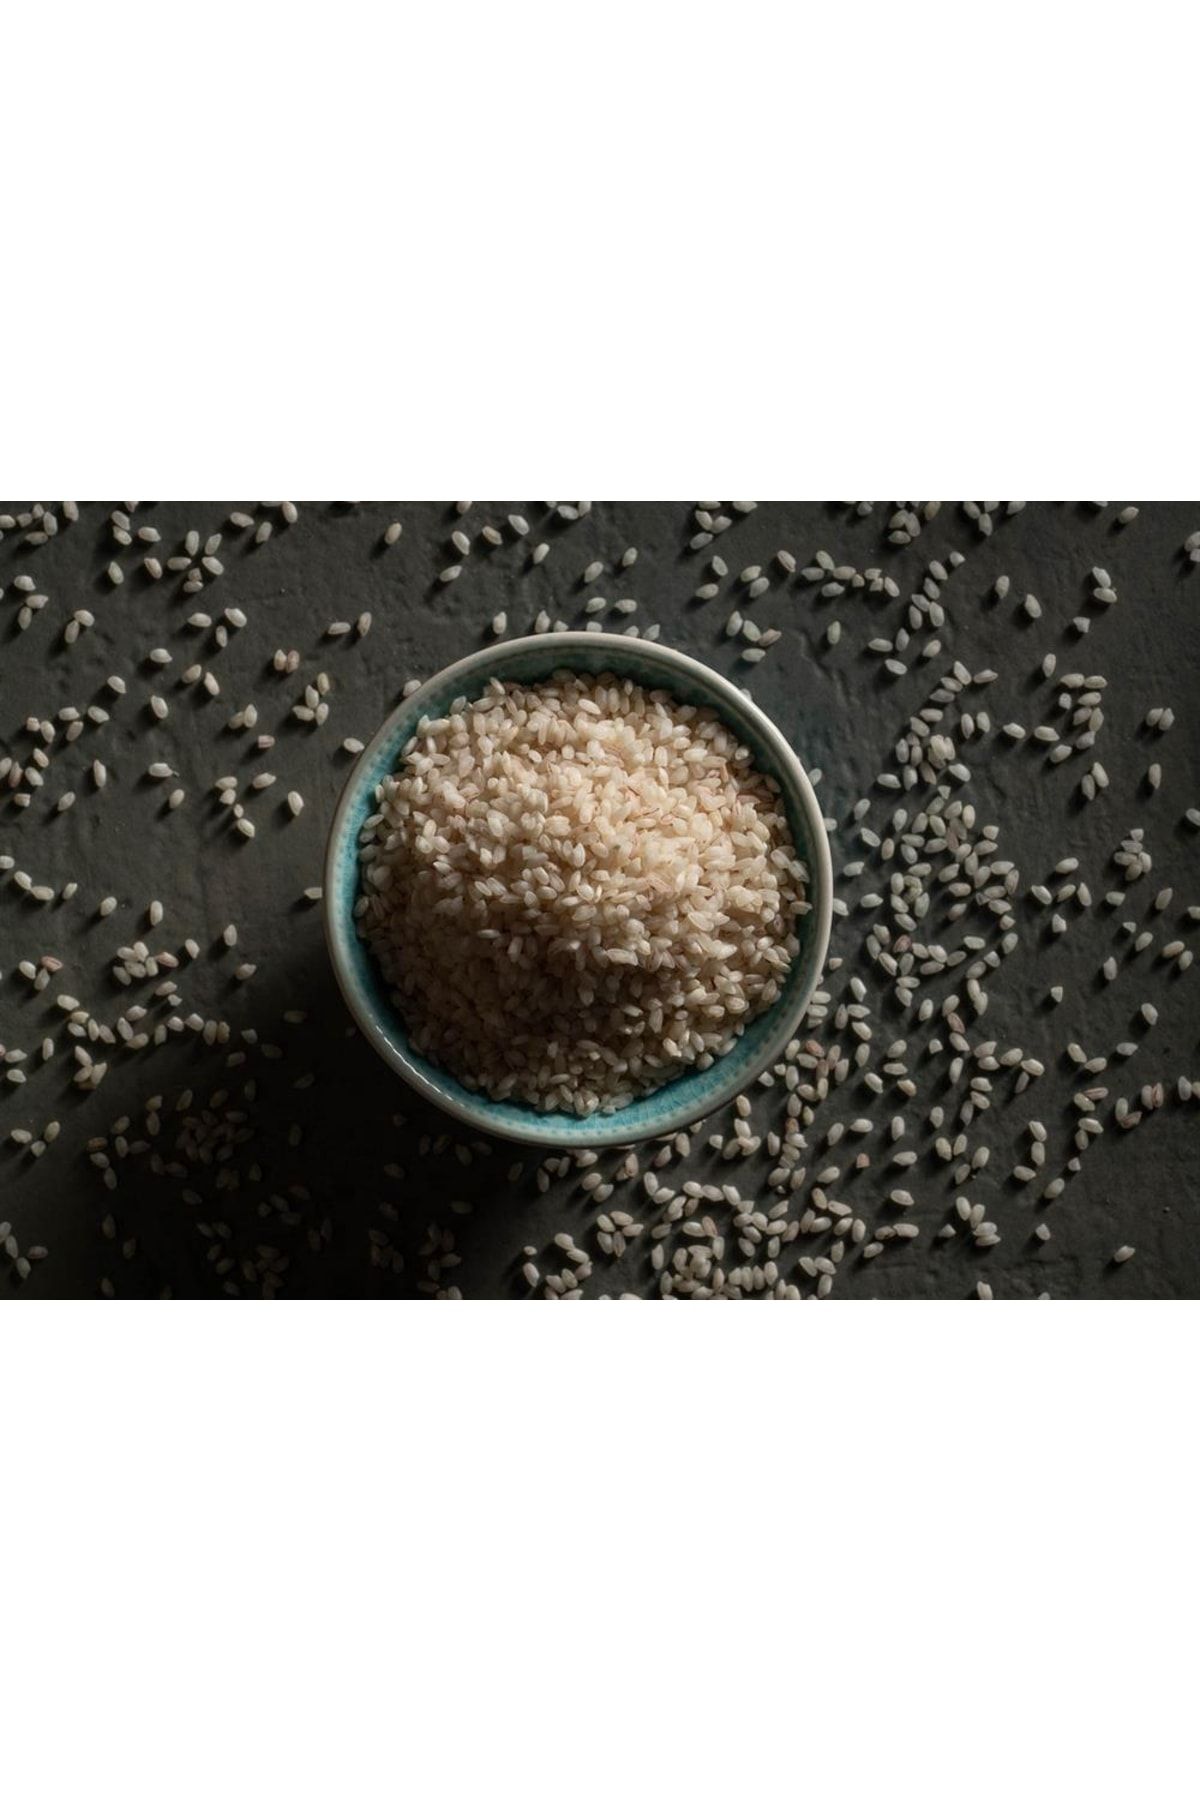 KAŞKA Tosya Sarıkılçık Pirinci 2 Kg